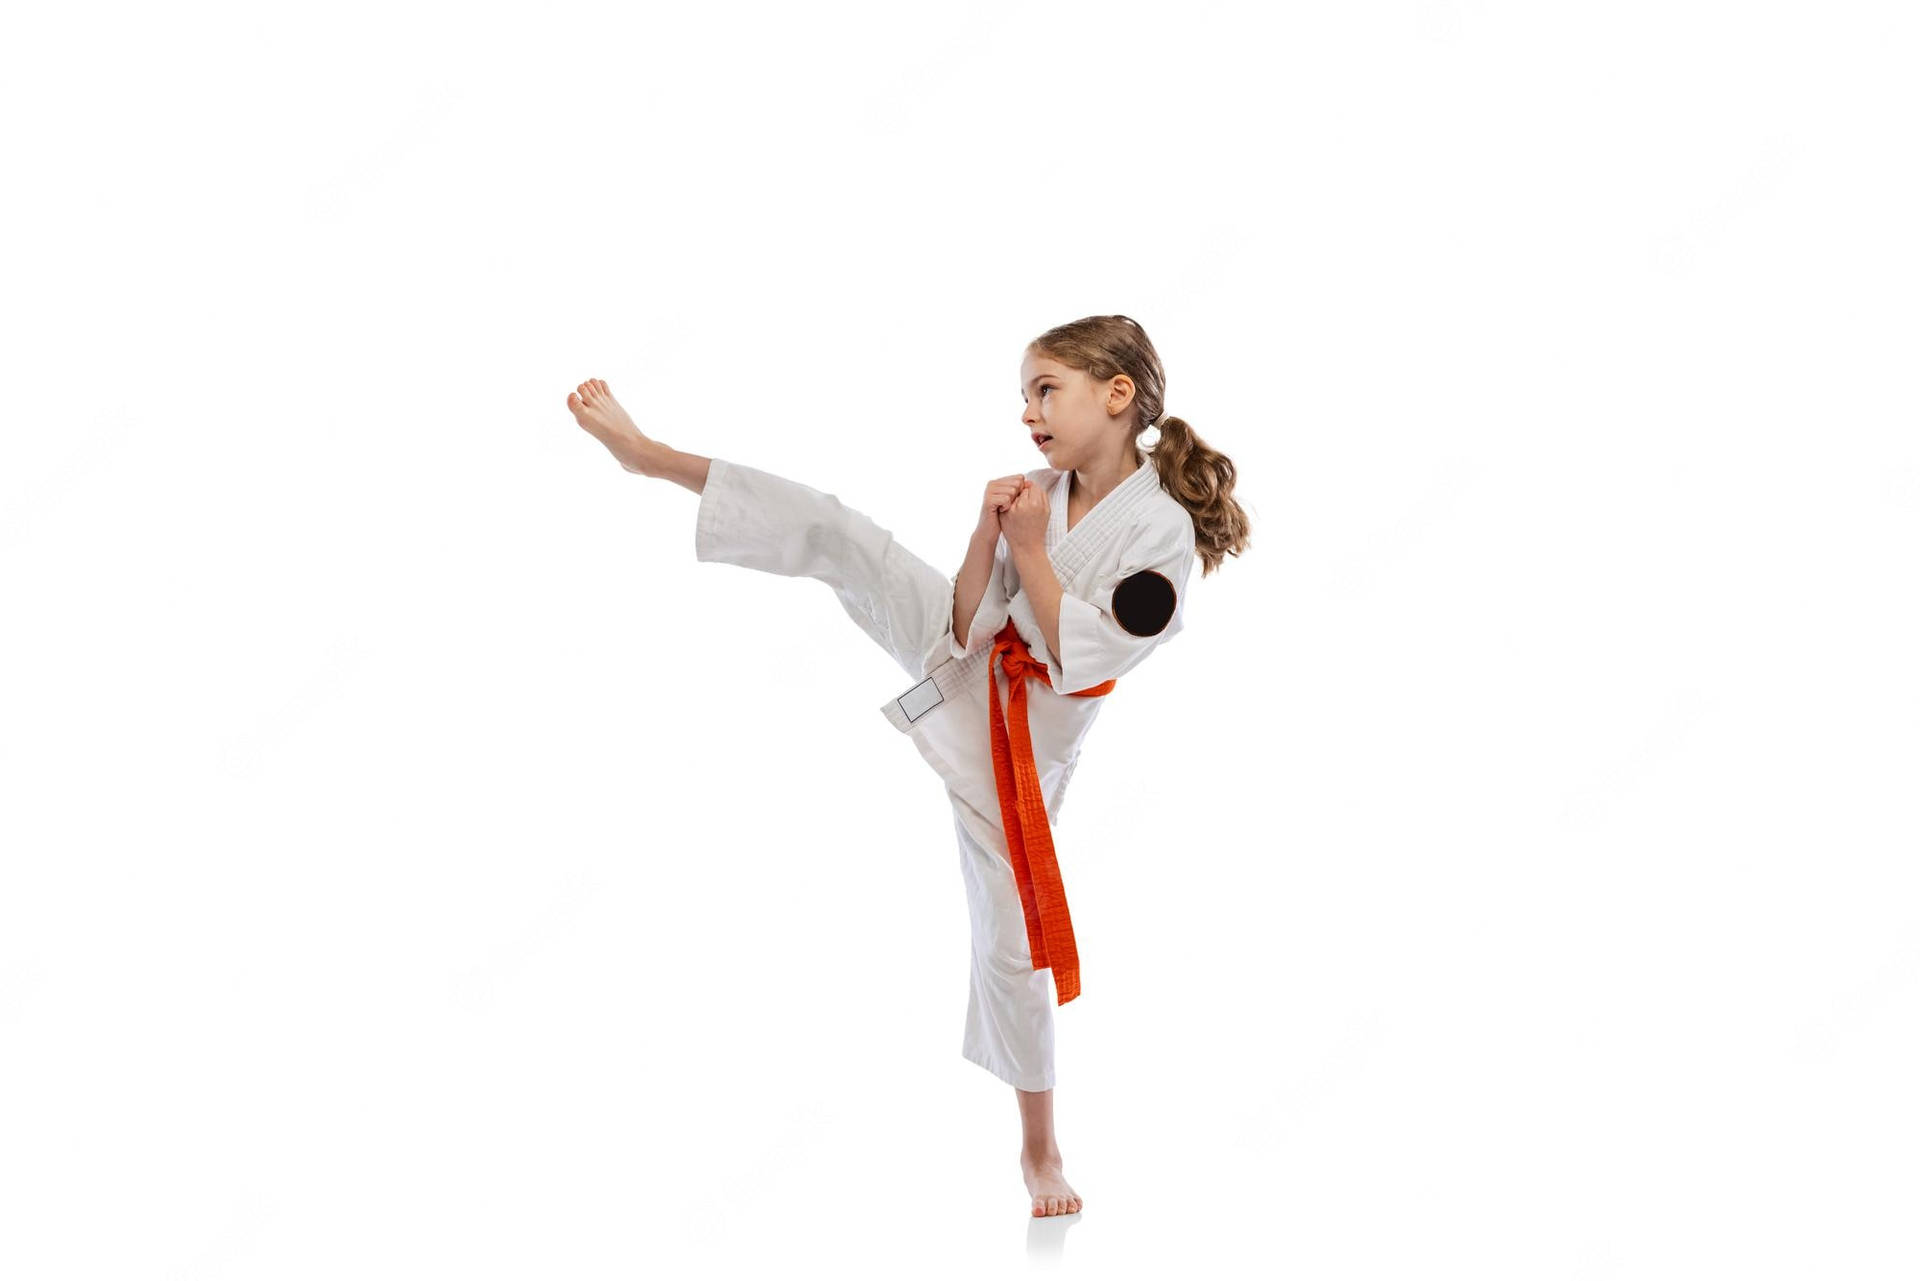 Chicaminimalista De Taekwondo En Pose De Patada Lateral. Fondo de pantalla